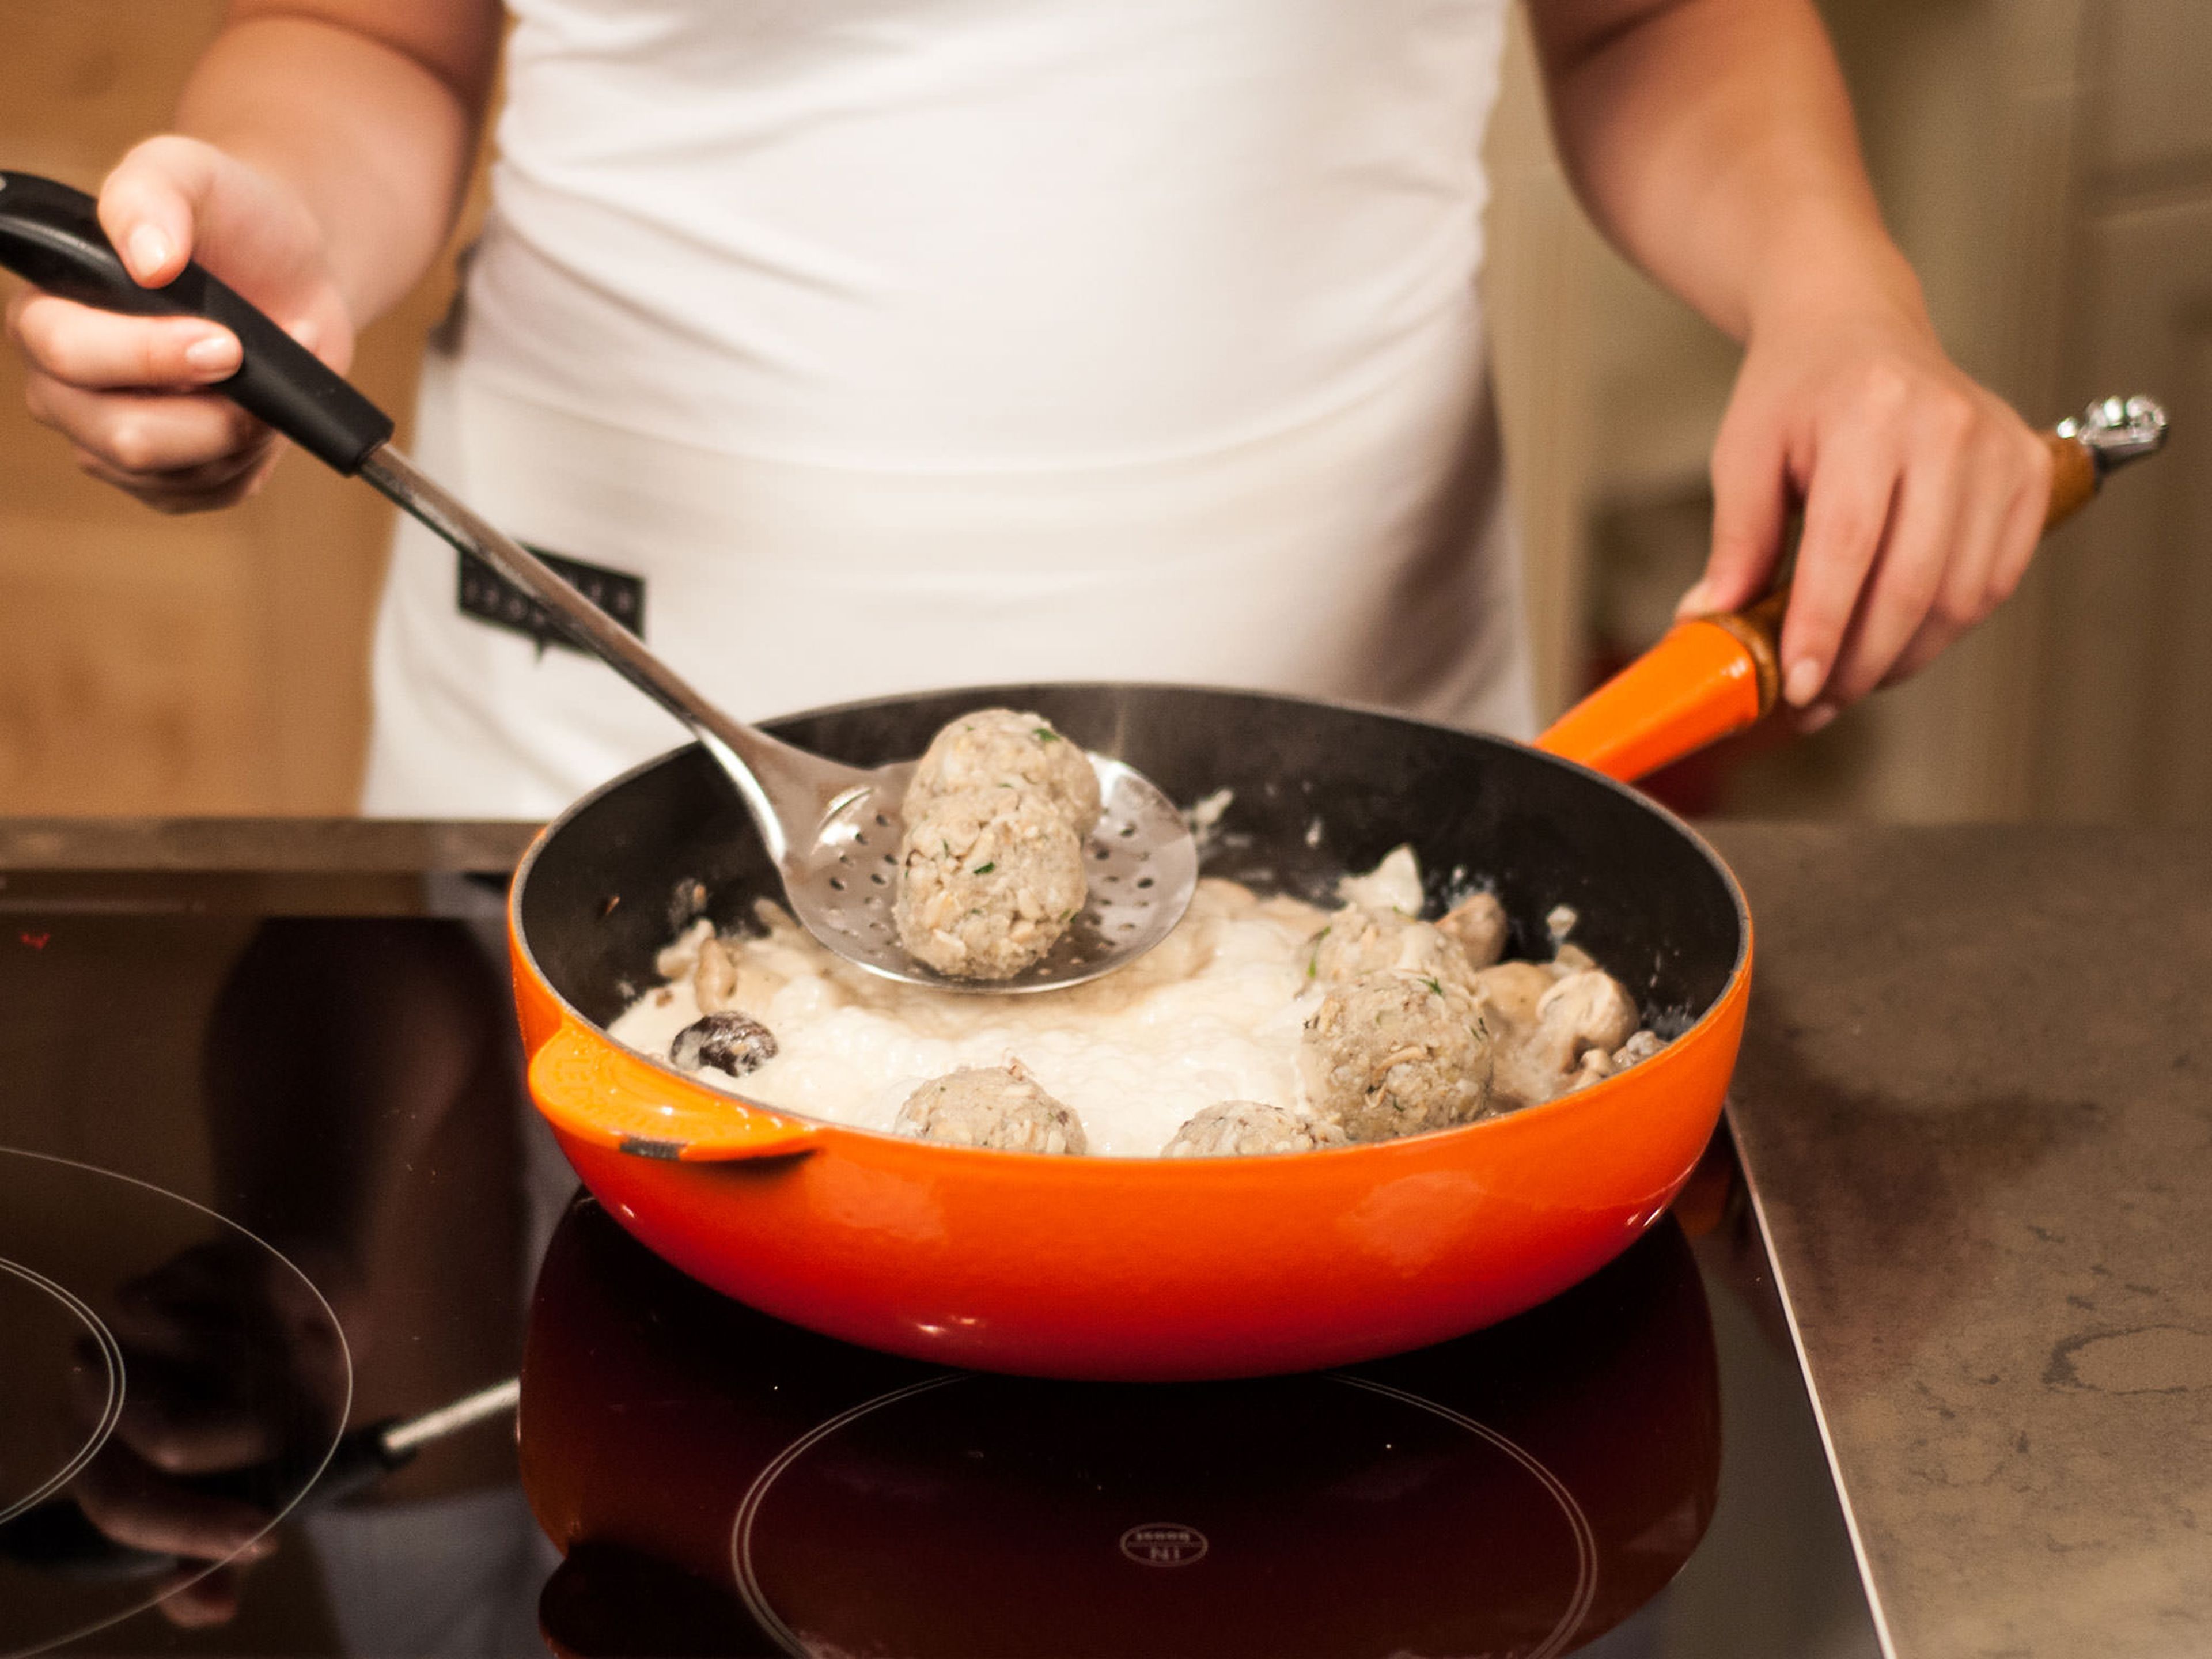 Pilz-Linsen-Bällchen hinzugeben, mit Soße bedecken und ca. 3 – 5 Min. köcheln lassen, bis sie in der Mitte heiß sind. Petersilie vorsichtig unterheben und direkt servieren. Guten Appetit!